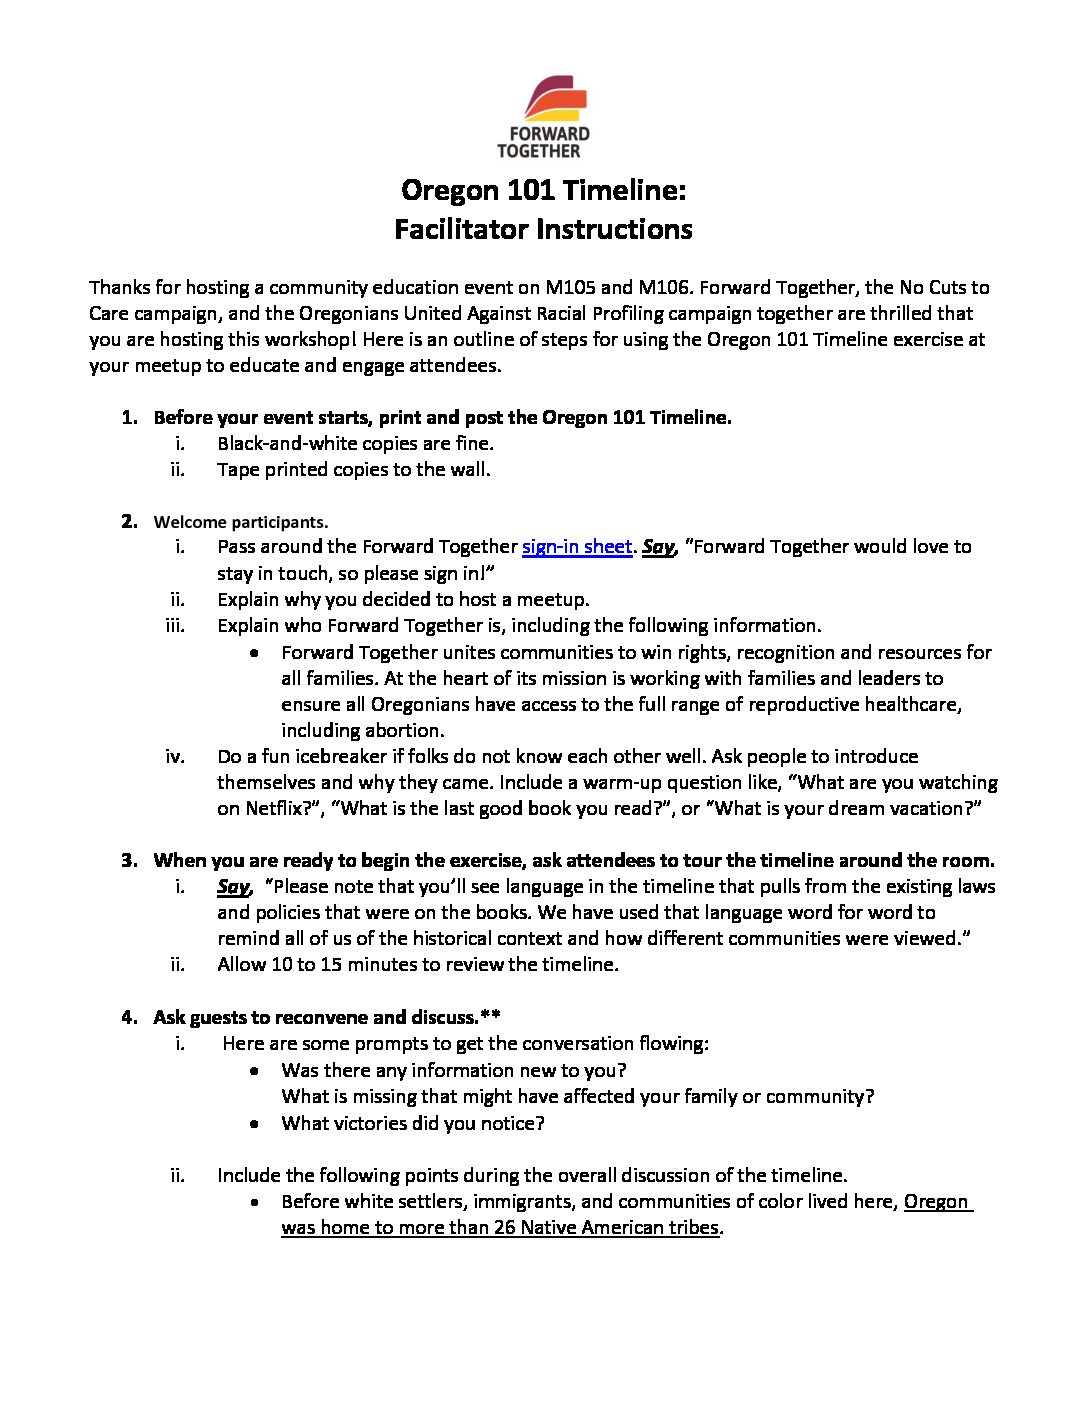 Oregon 101 Community Education Timeline